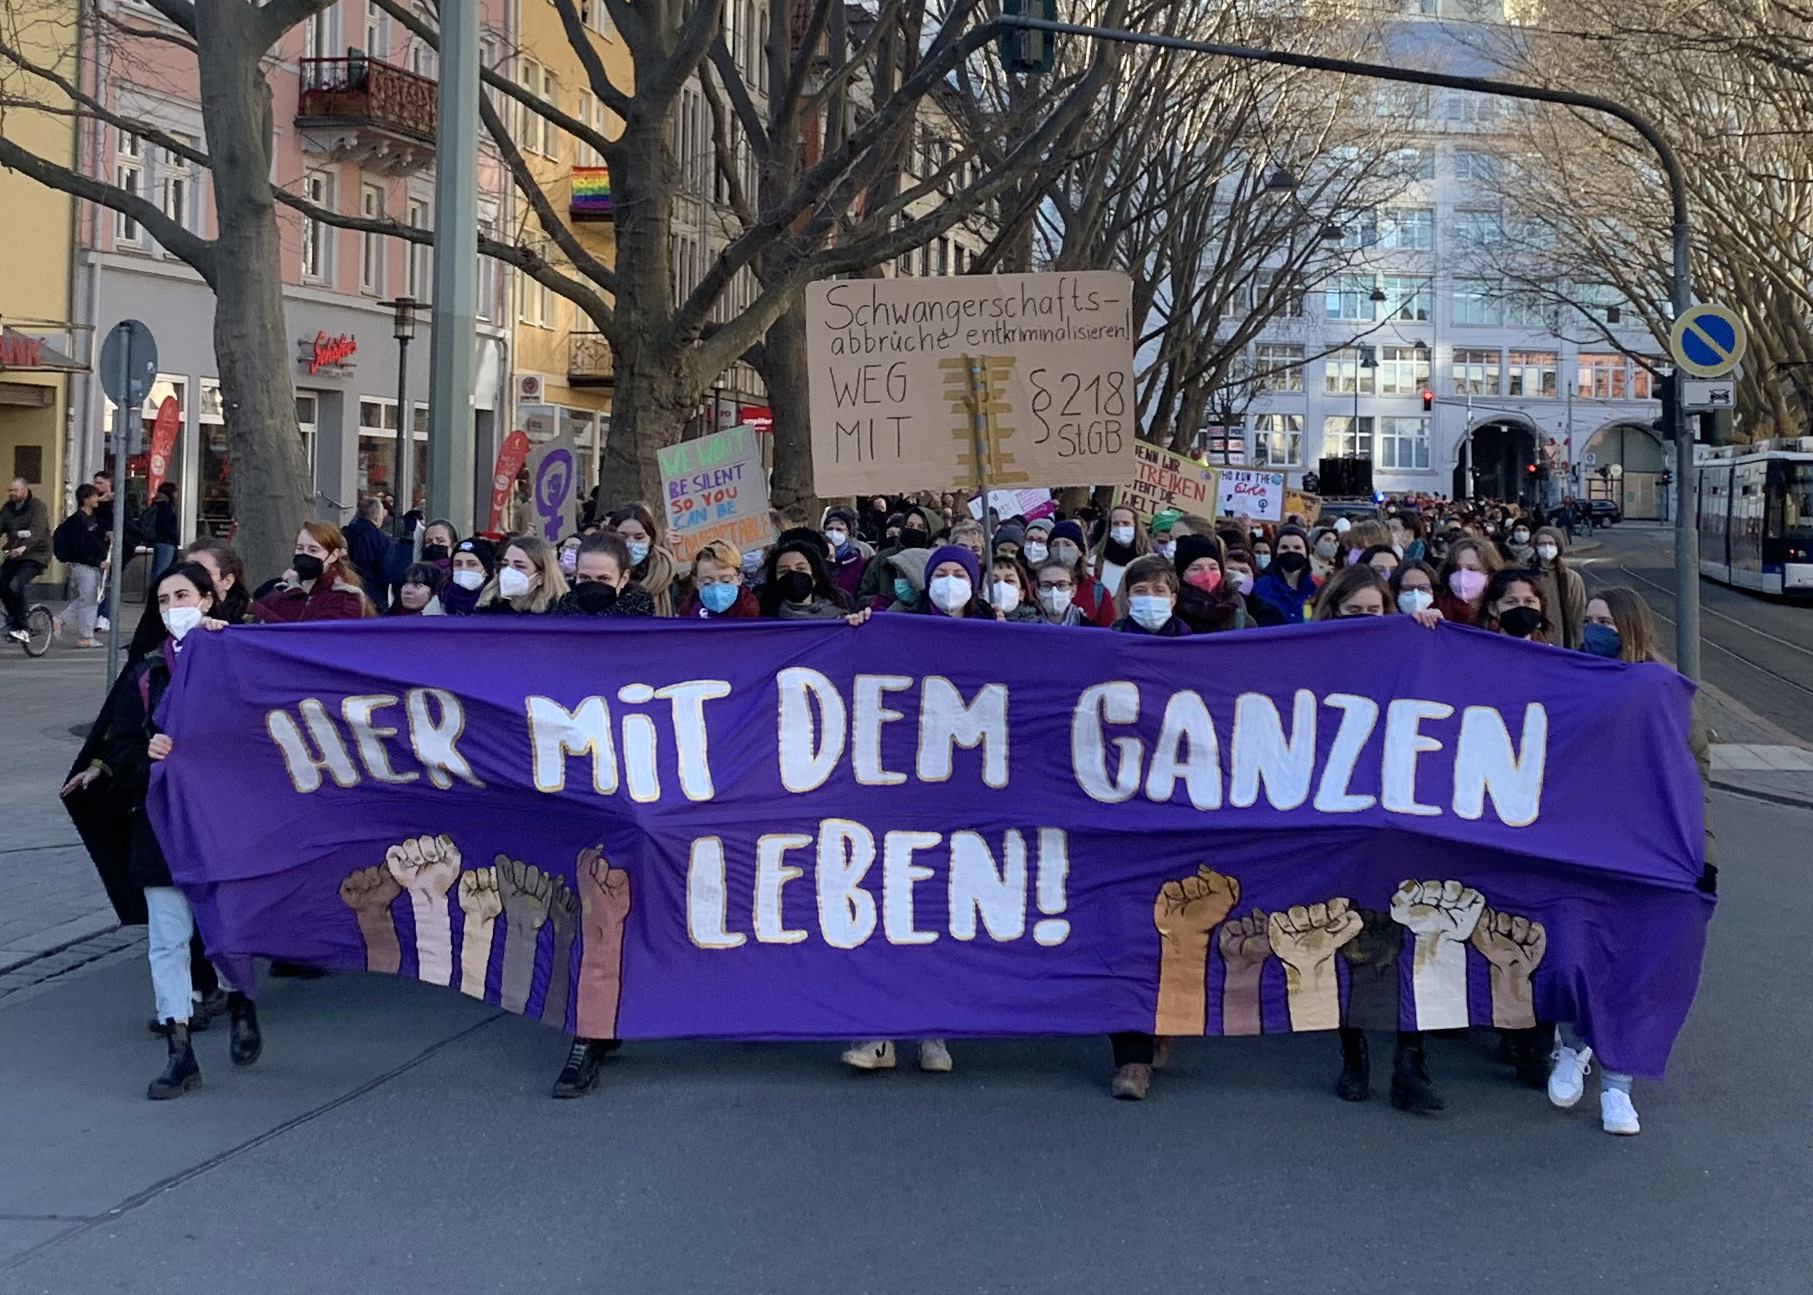 Jenaer Nachrichten – Frauentag in Jena: 600 Menschen bei Protest